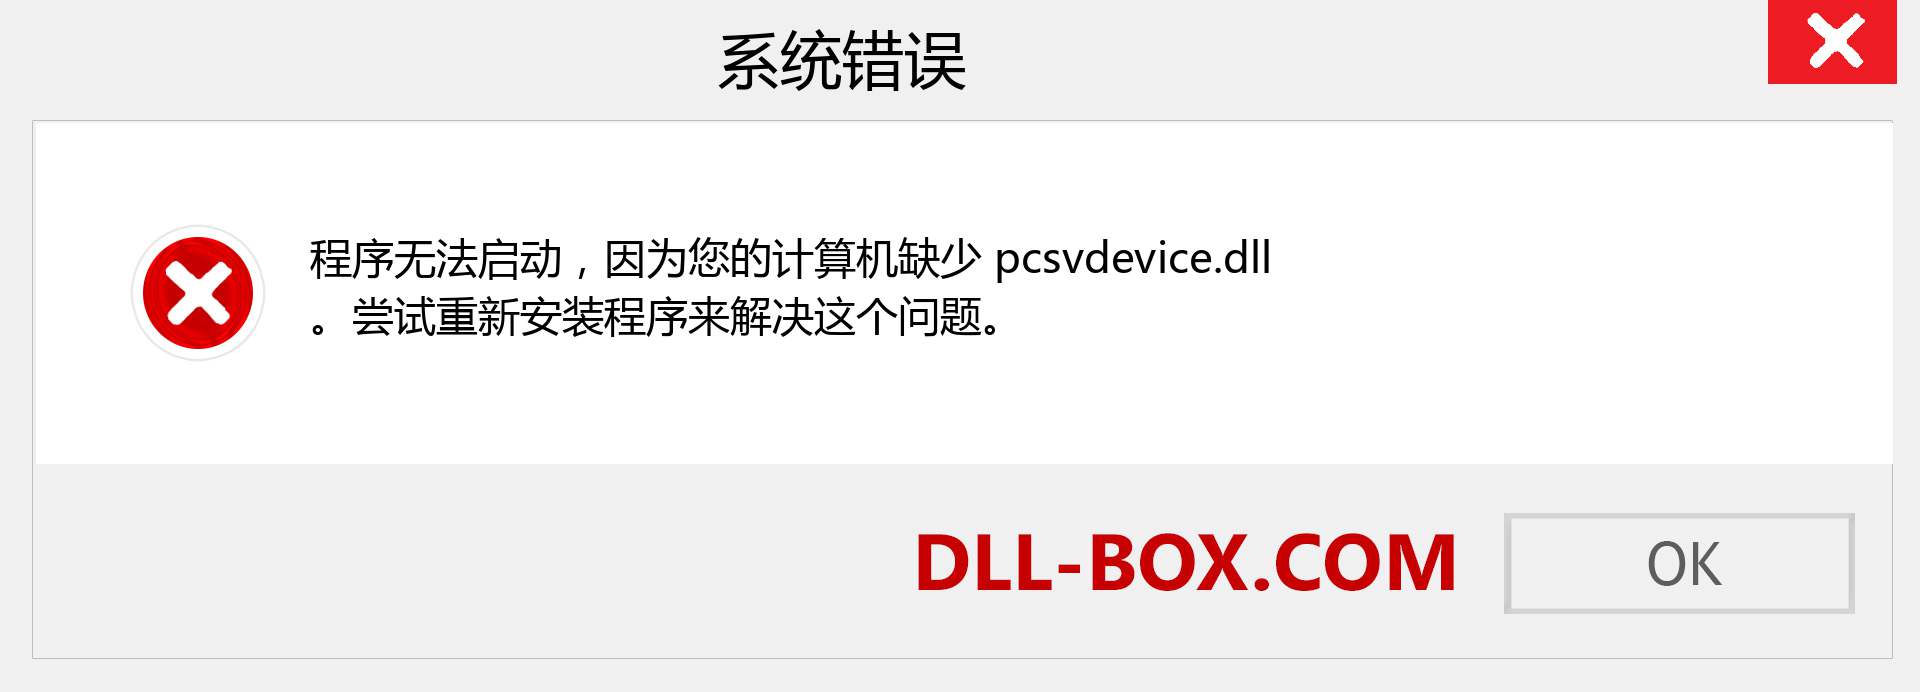 pcsvdevice.dll 文件丢失？。 适用于 Windows 7、8、10 的下载 - 修复 Windows、照片、图像上的 pcsvdevice dll 丢失错误